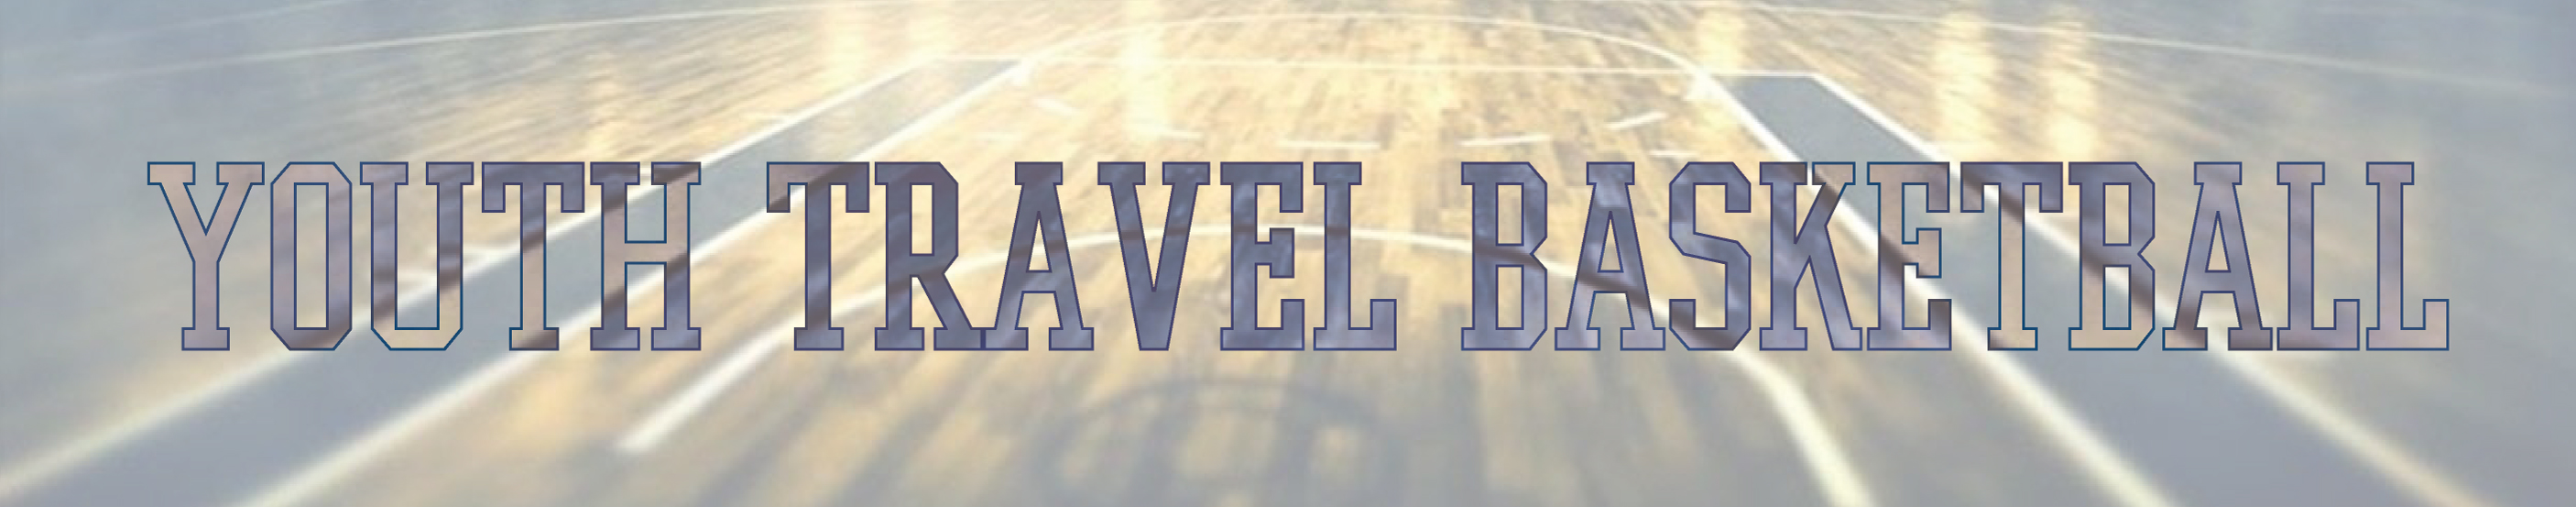 Duke Travel Basketball